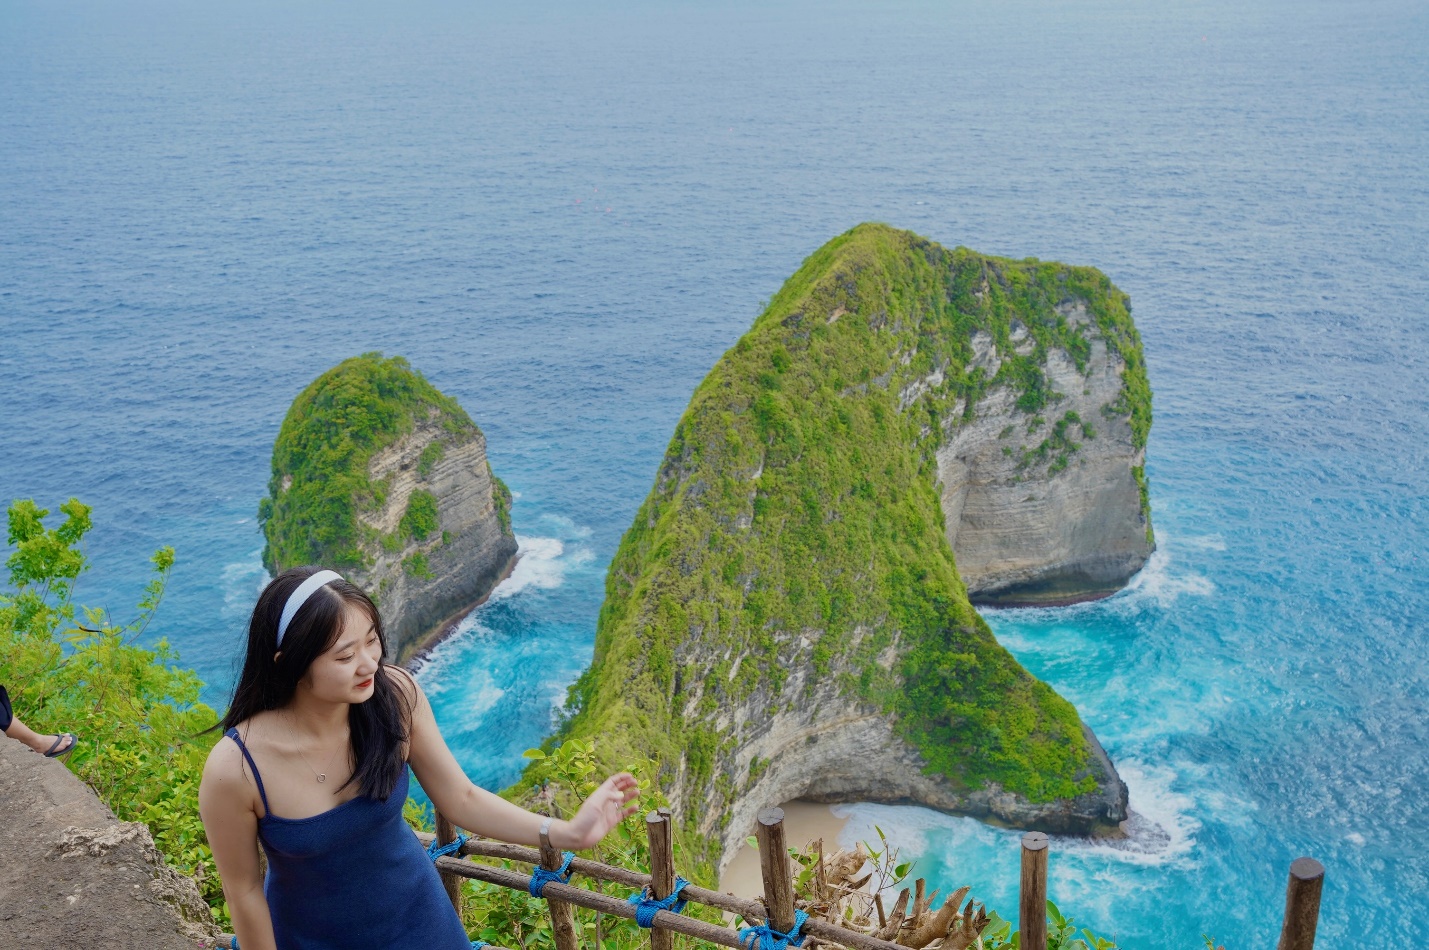 Đến Bali để đắm mình trong cảnh đẹp ở 'đảo thiên đường' - 5